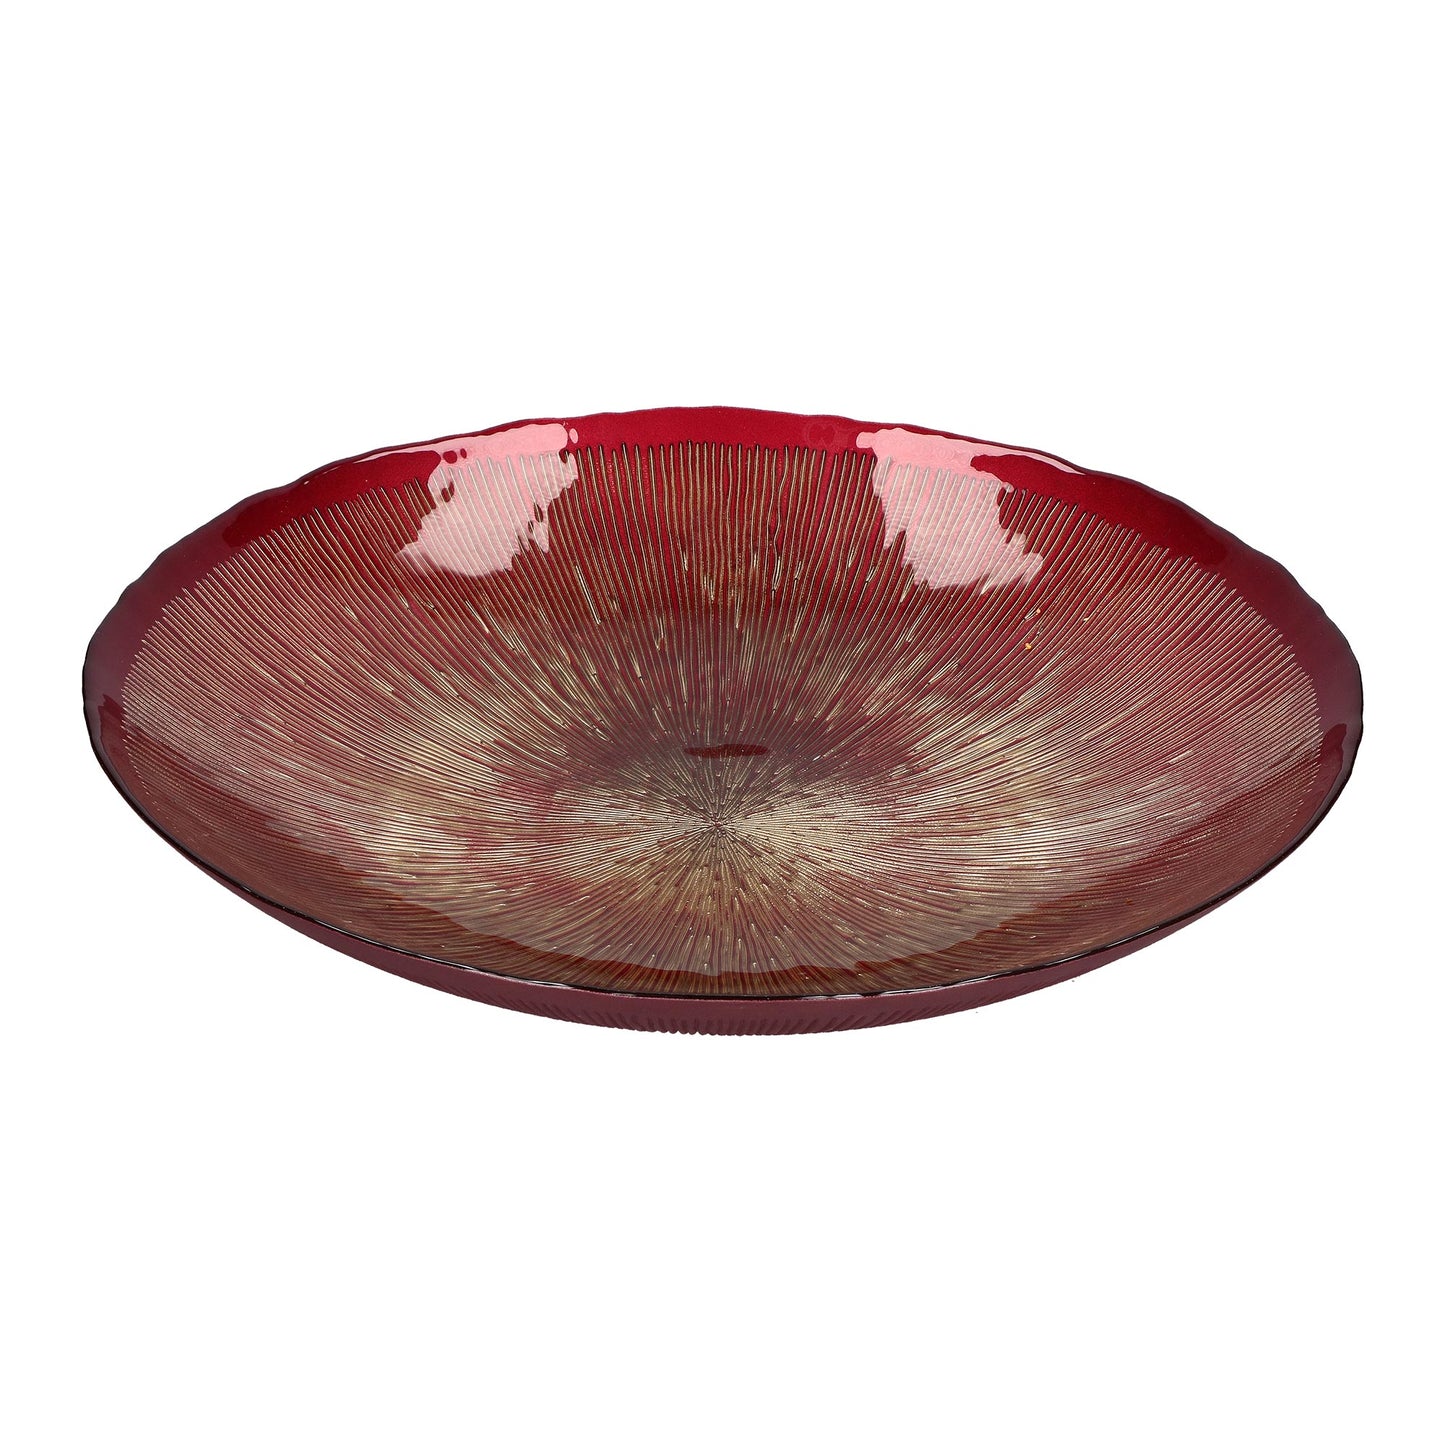 Centrotavola in vetro di colore rosso e oro. Dimensioni: Ø 40 cm. In negozio e online su tuttochic.it